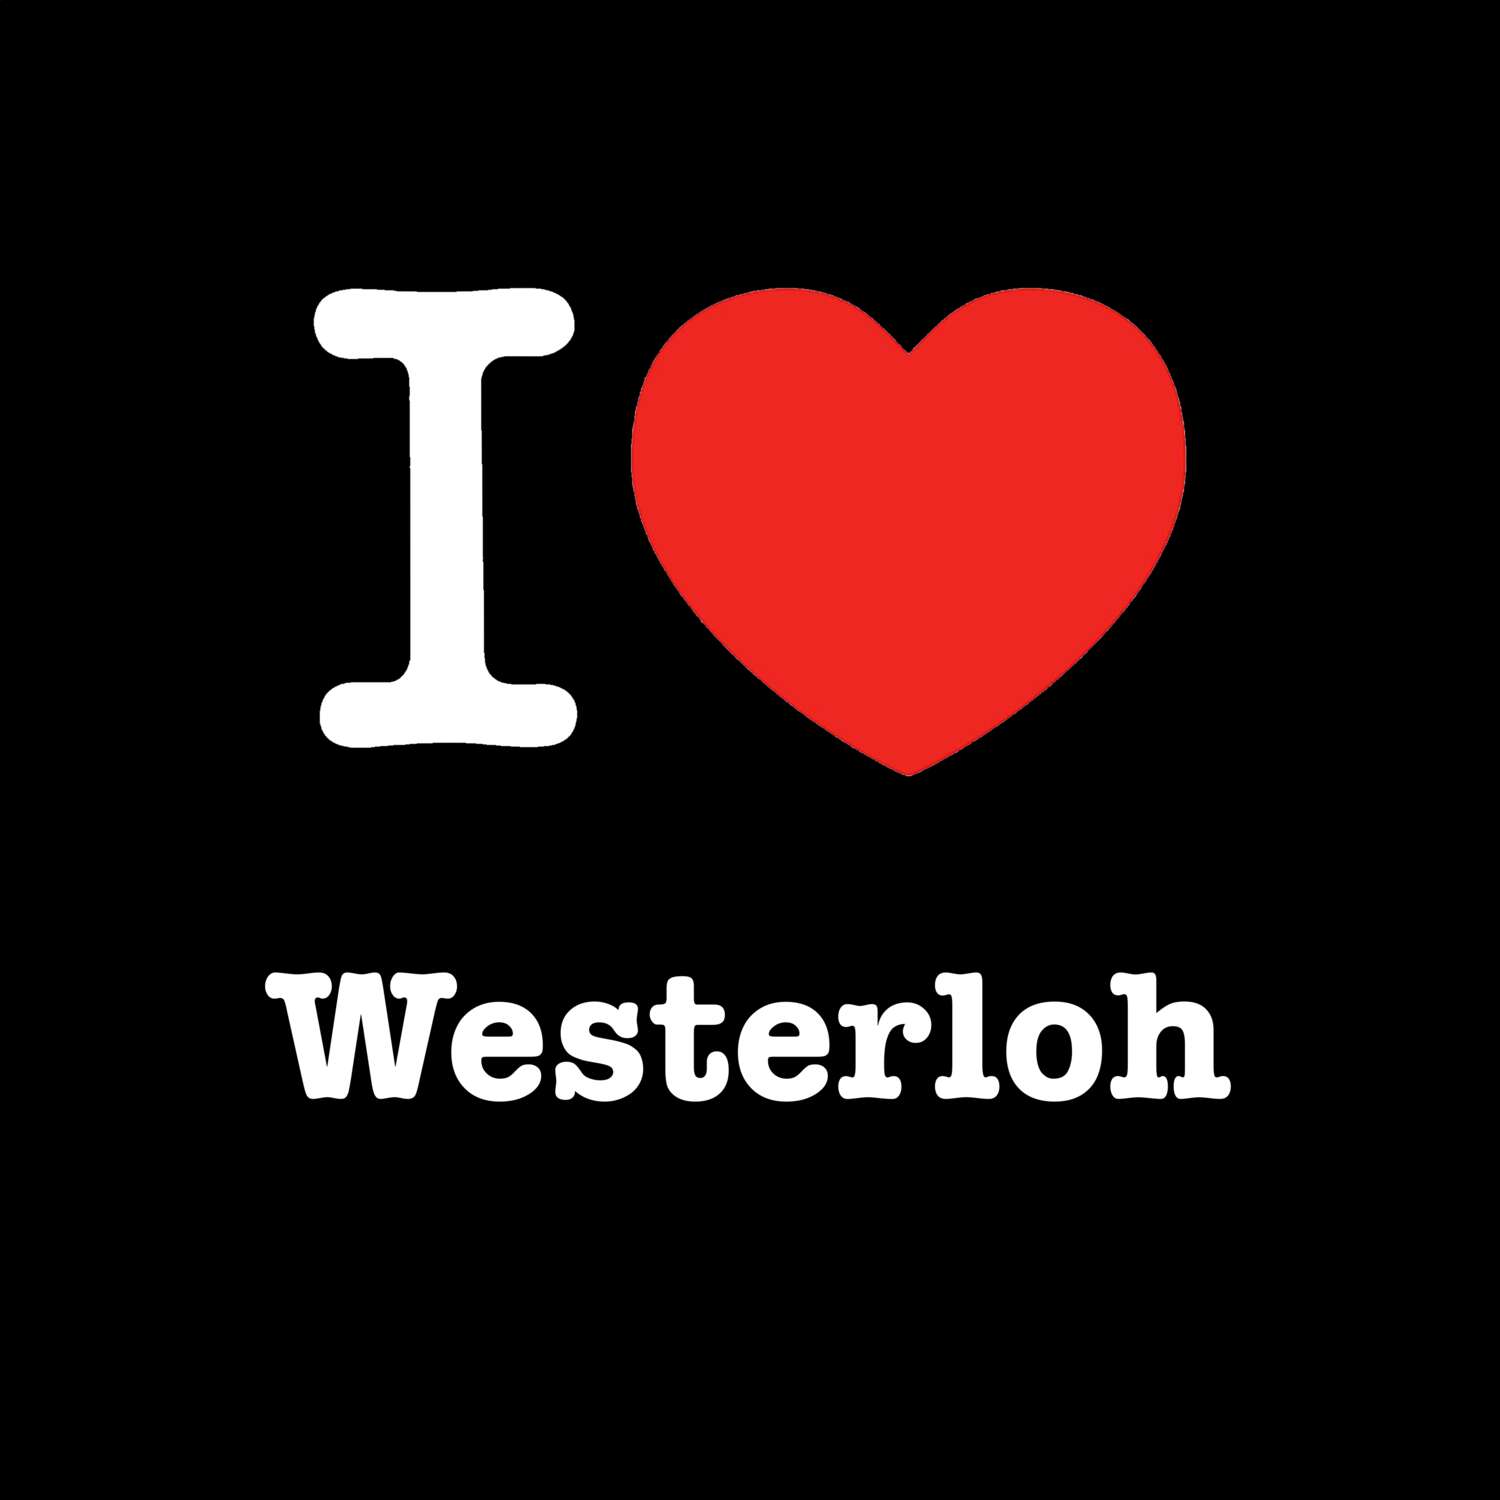 Westerloh T-Shirt »I love«